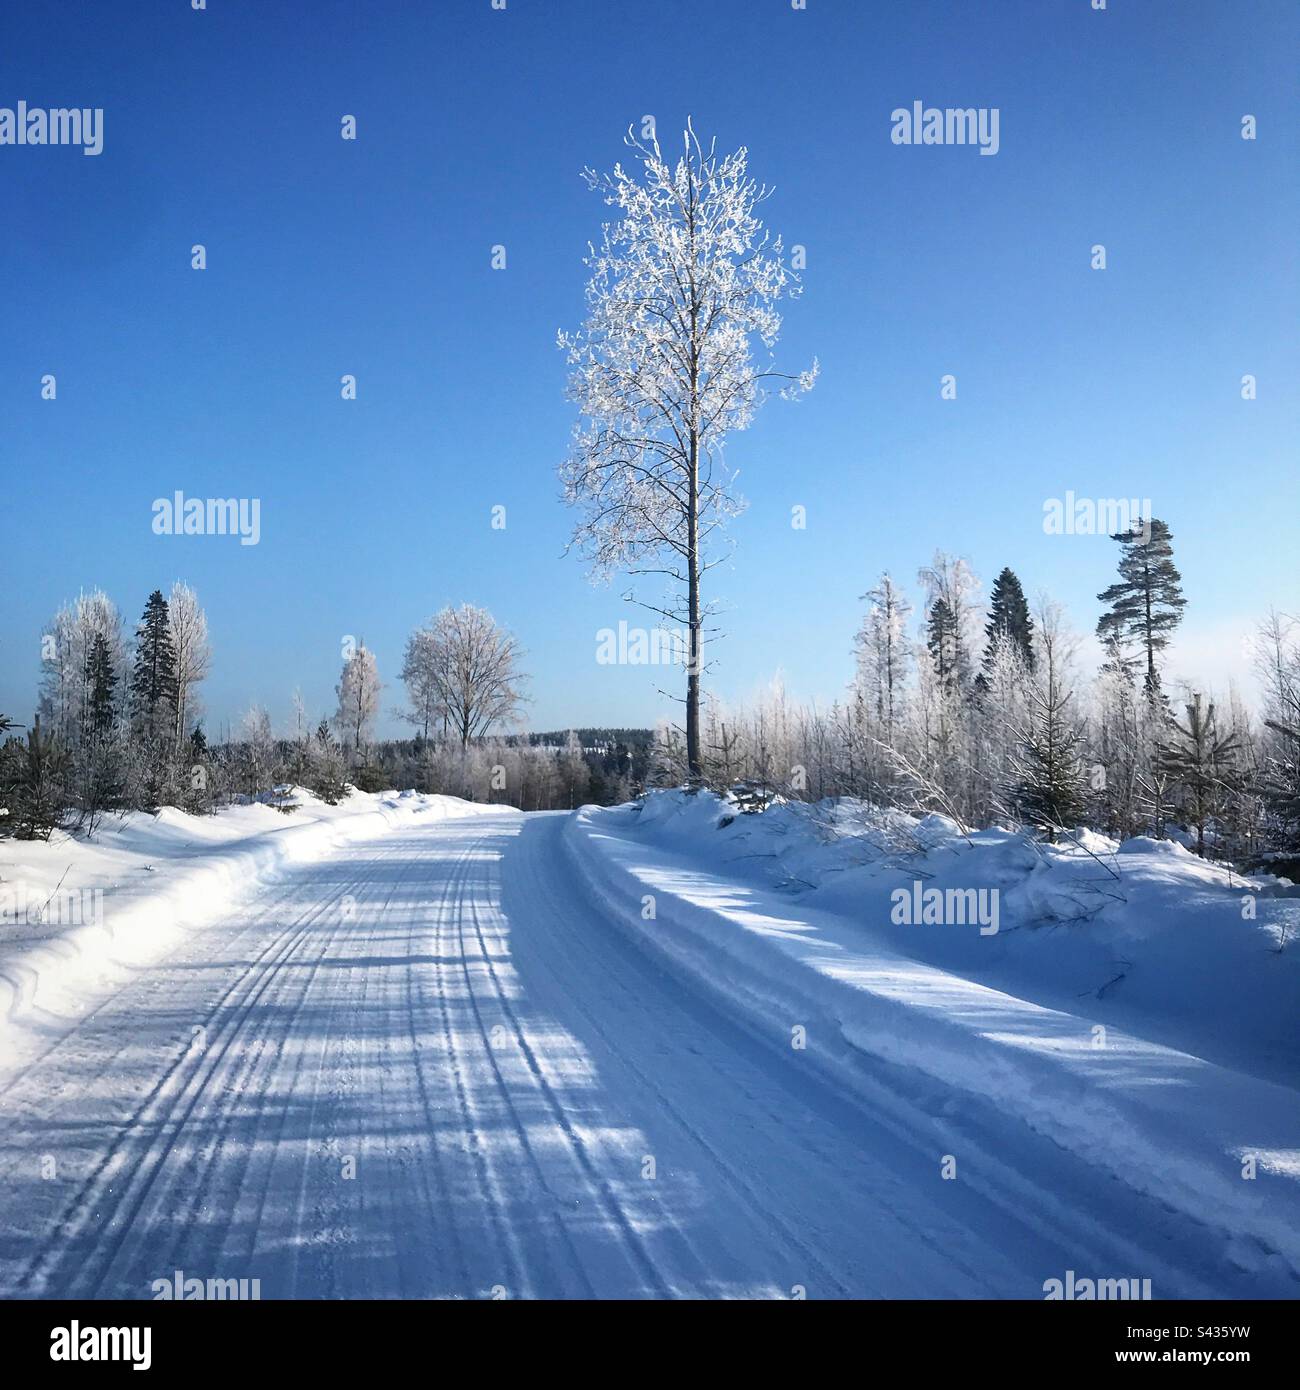 Splendidi alberi congelati su una remota strada di campagna in inverno nel sub-Circolo Artico regione di Kajaani in Finlandia Foto Stock